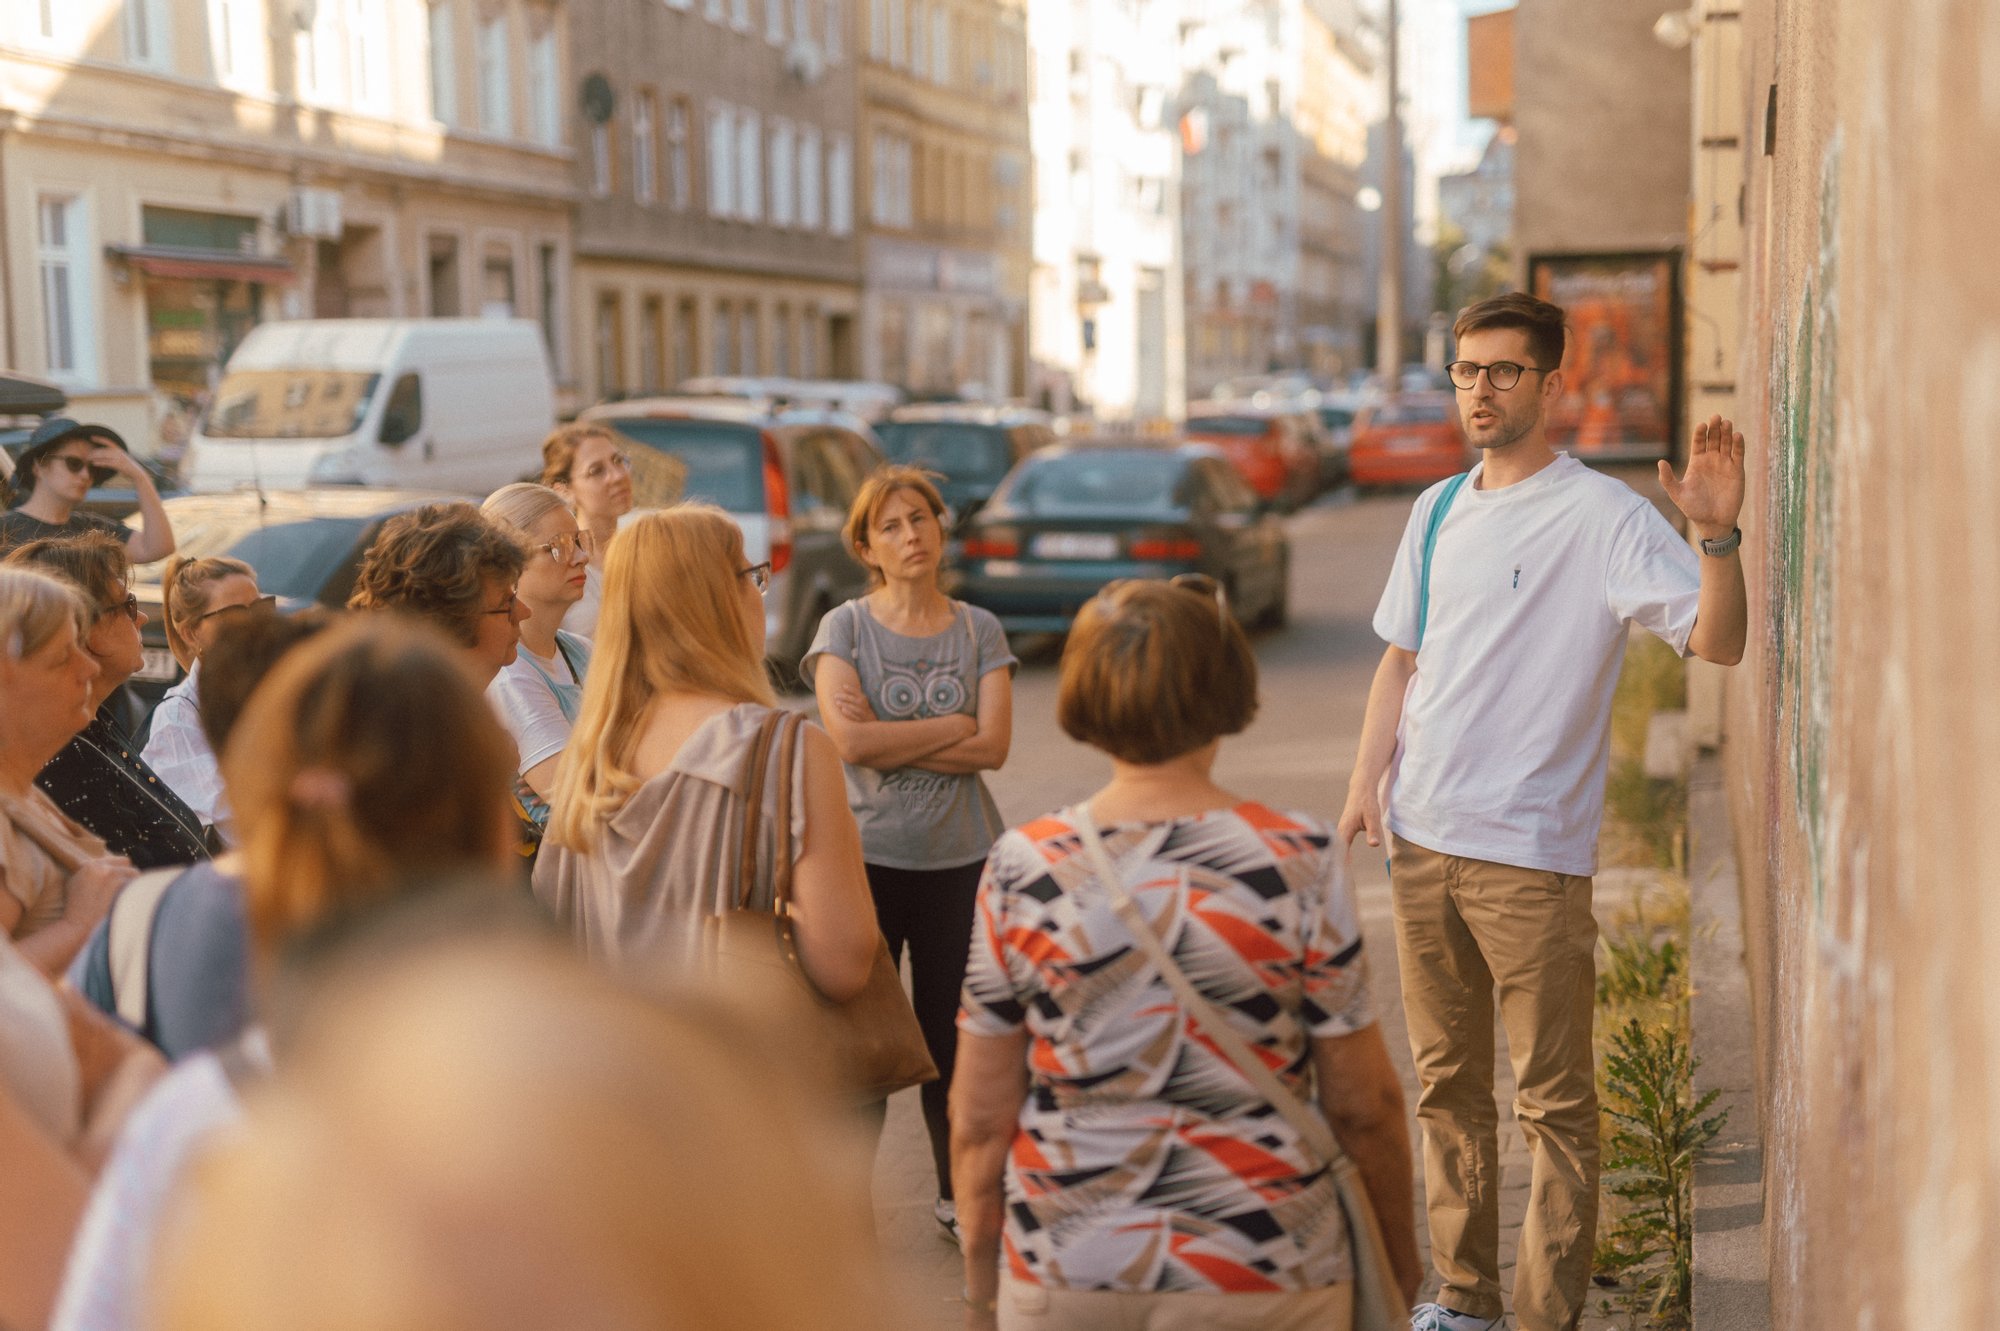 Kolorowa, pozioma fotografia, przedstawiająca grupę osób w różnym wieku, stojącą na chodniku. Przed nimi Maciek Wlazło - przewodnik spaceru, opowiadający o miejscu, w którym przystanęła grupa.